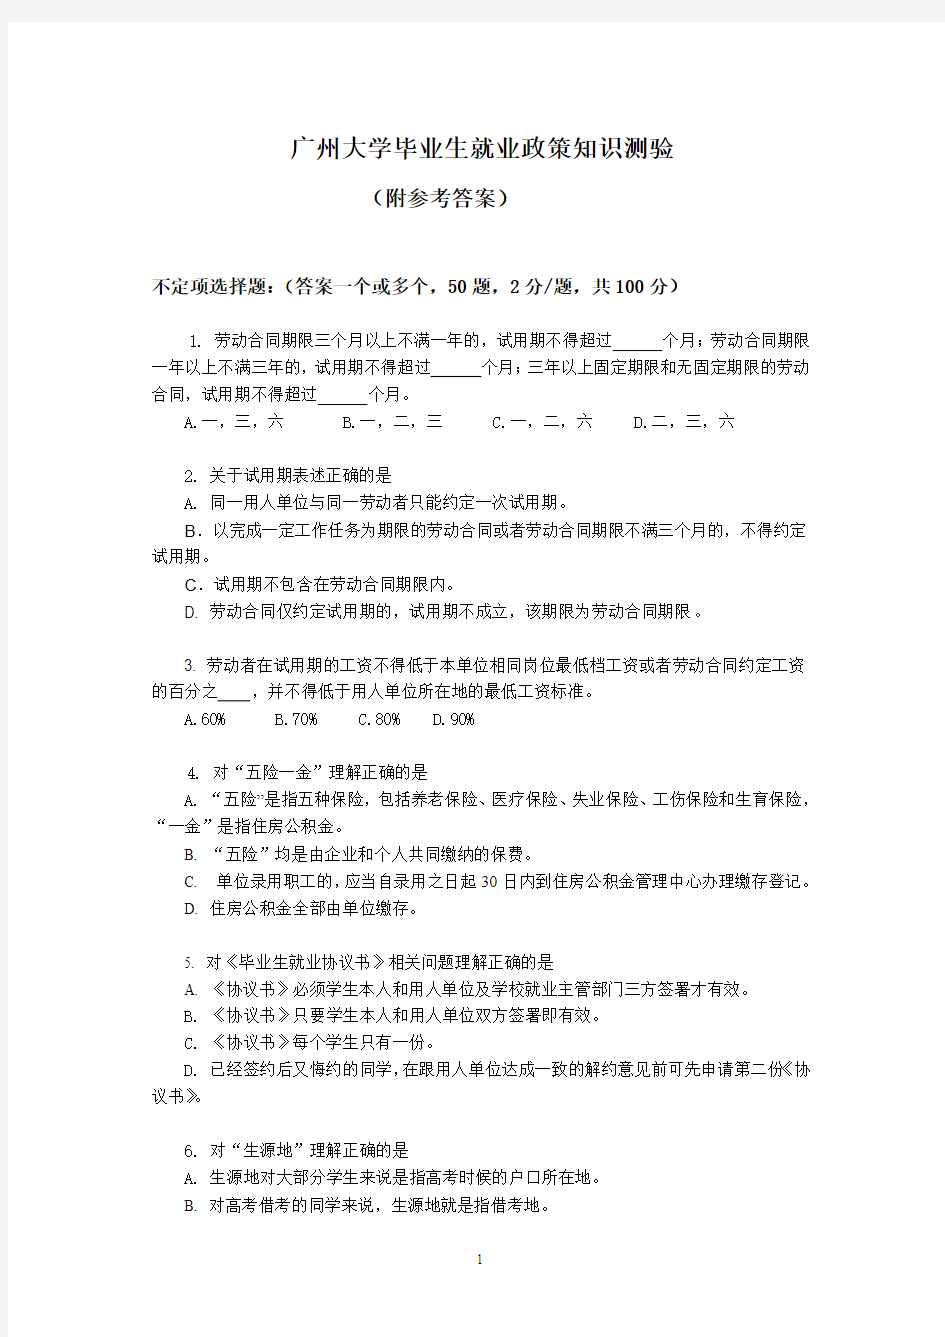 广州大学就业政策问答测试题目+满分答案